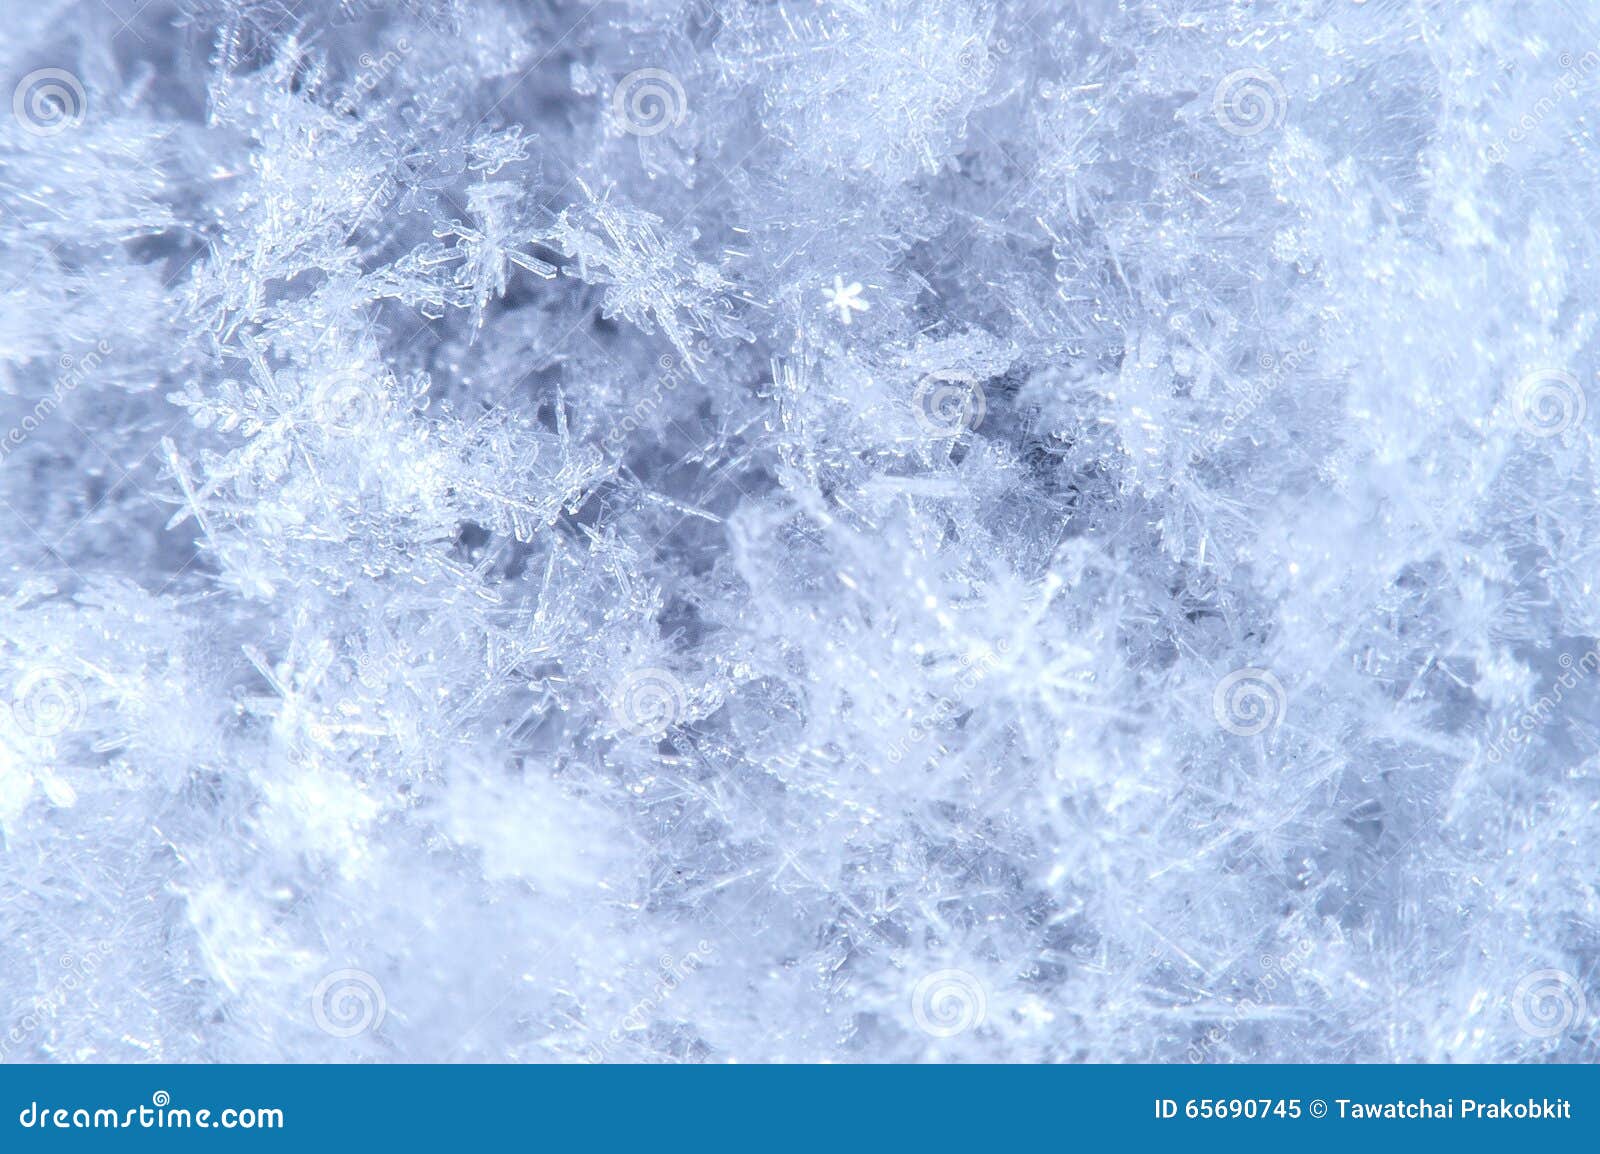 macro of snowflake in natural surroundings.